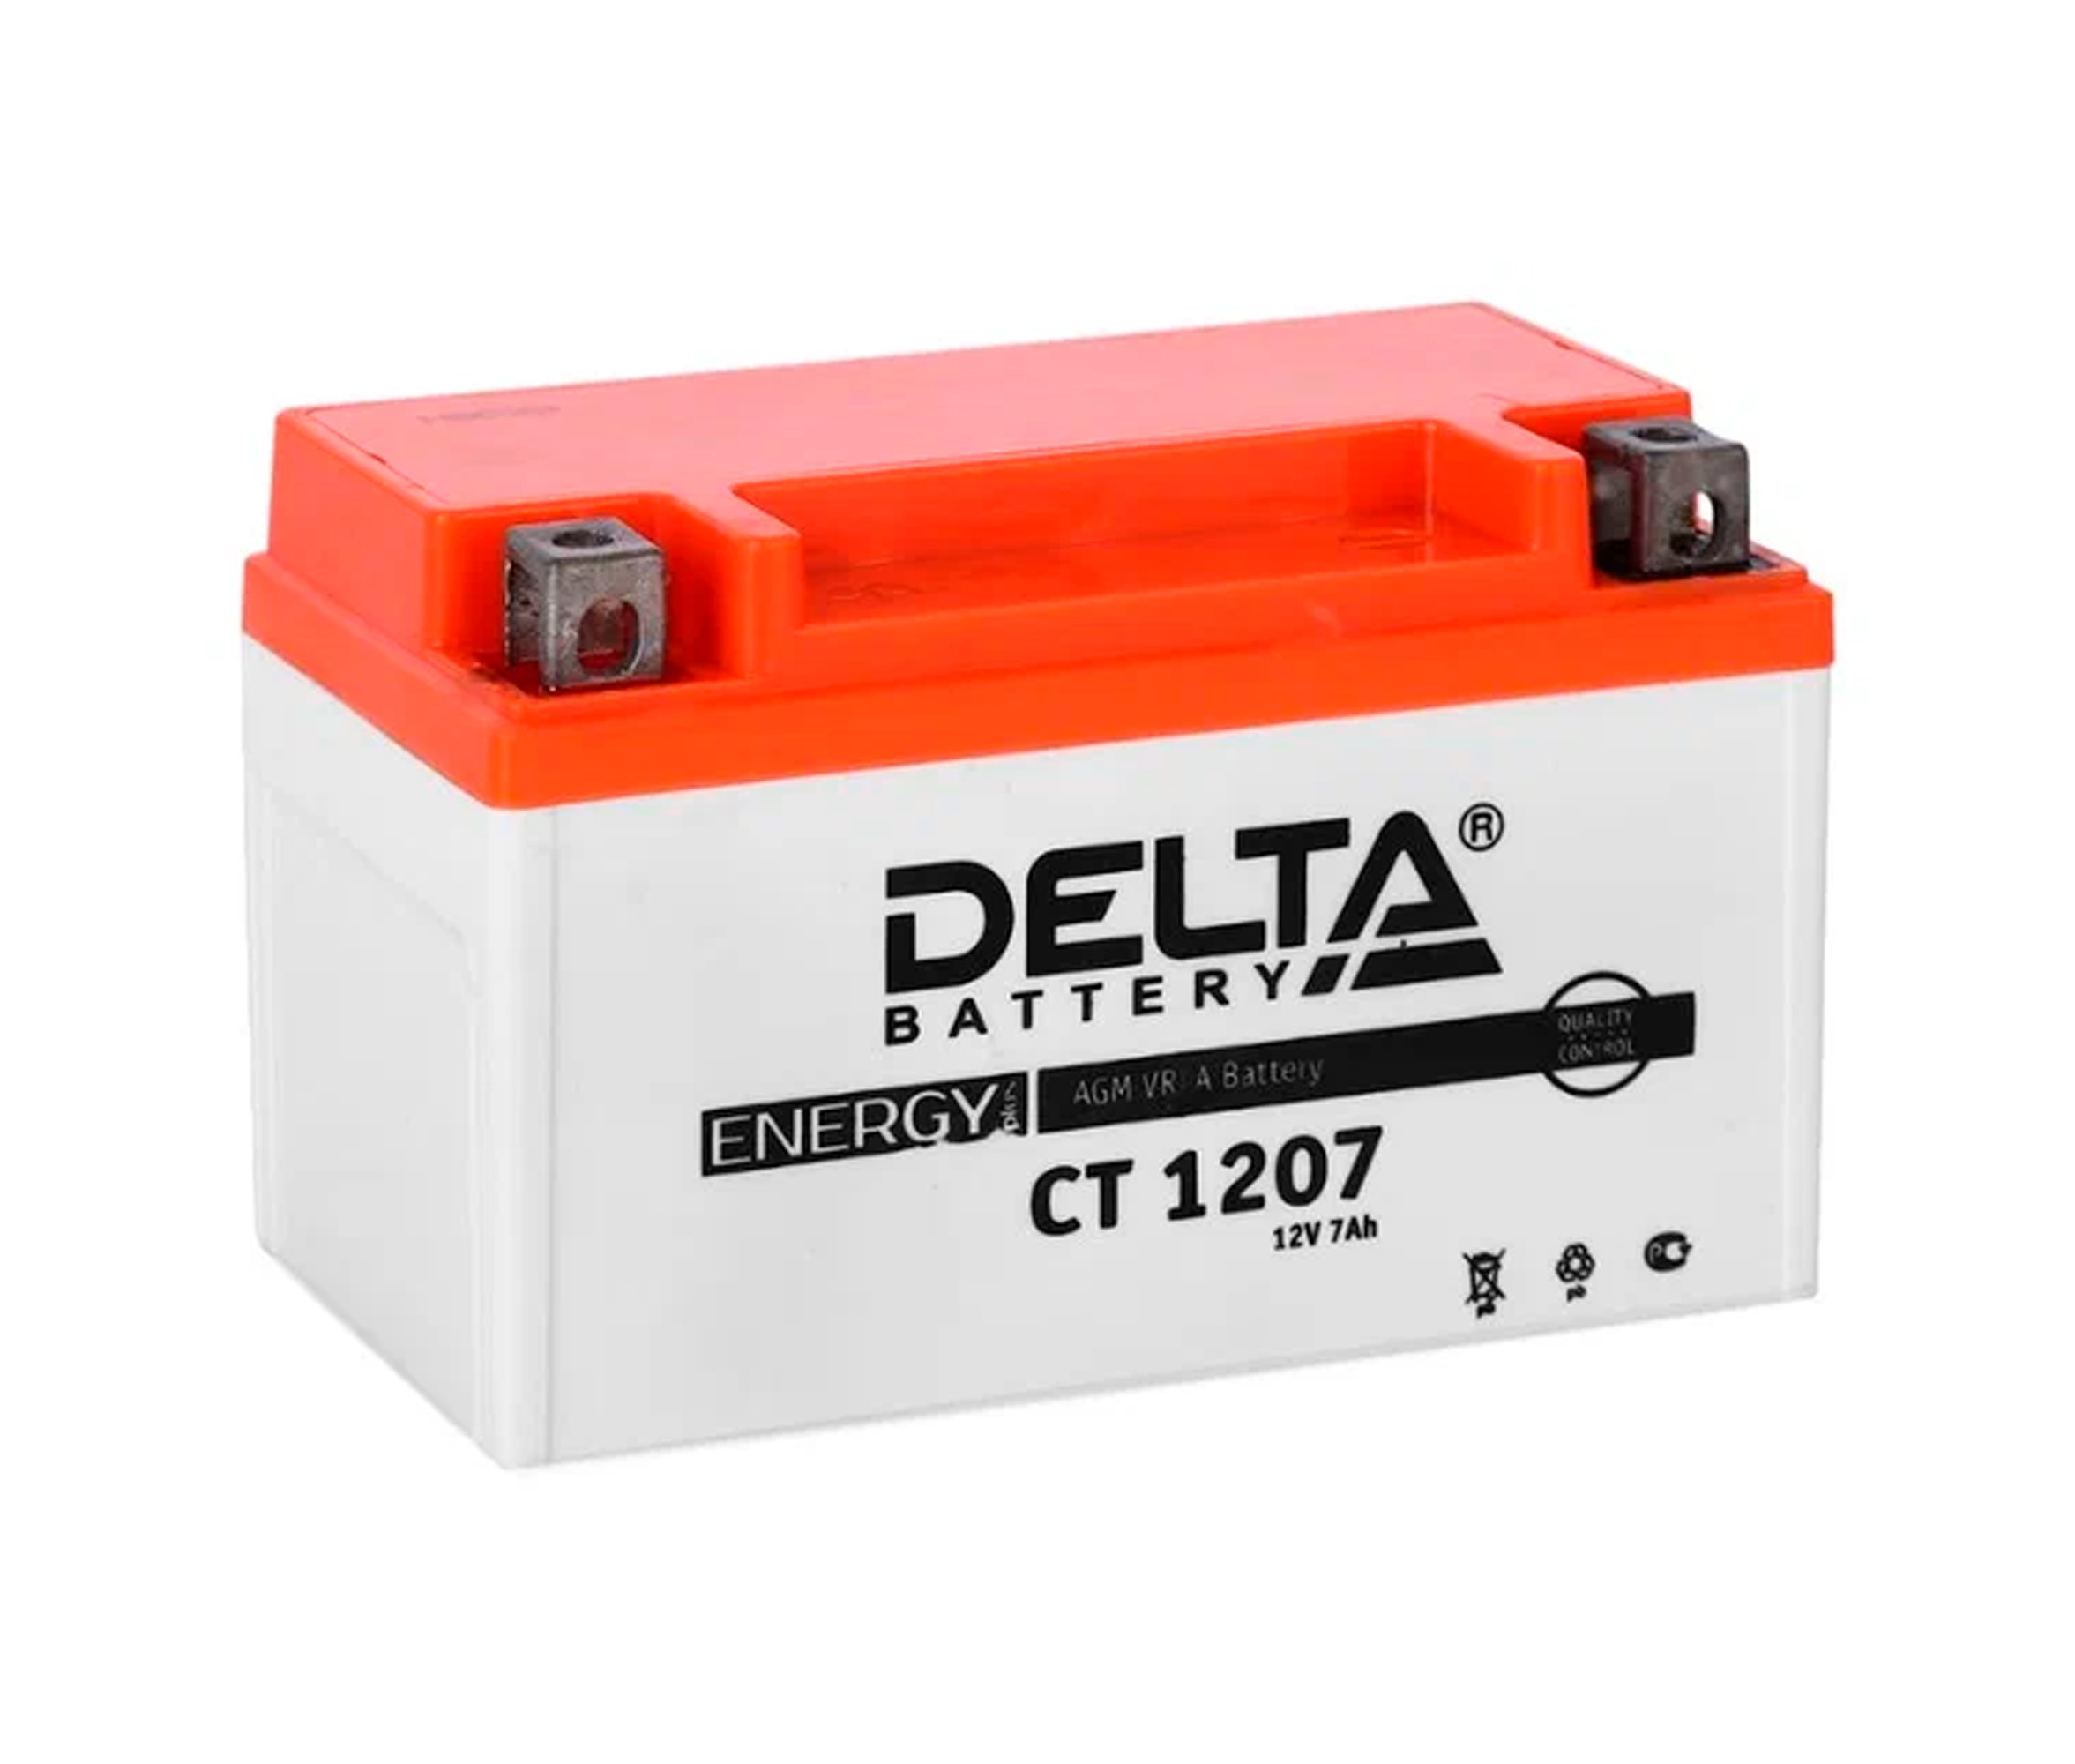 Аккумулятор 1207 12v 7ah. Siltech аккумулятор SPS 1207 12v7ah. Ct1209. Мотоланд ВАТТЕRY ml 1207 12 v. Delta Battery ct1207 12в / 7а·ч цены.